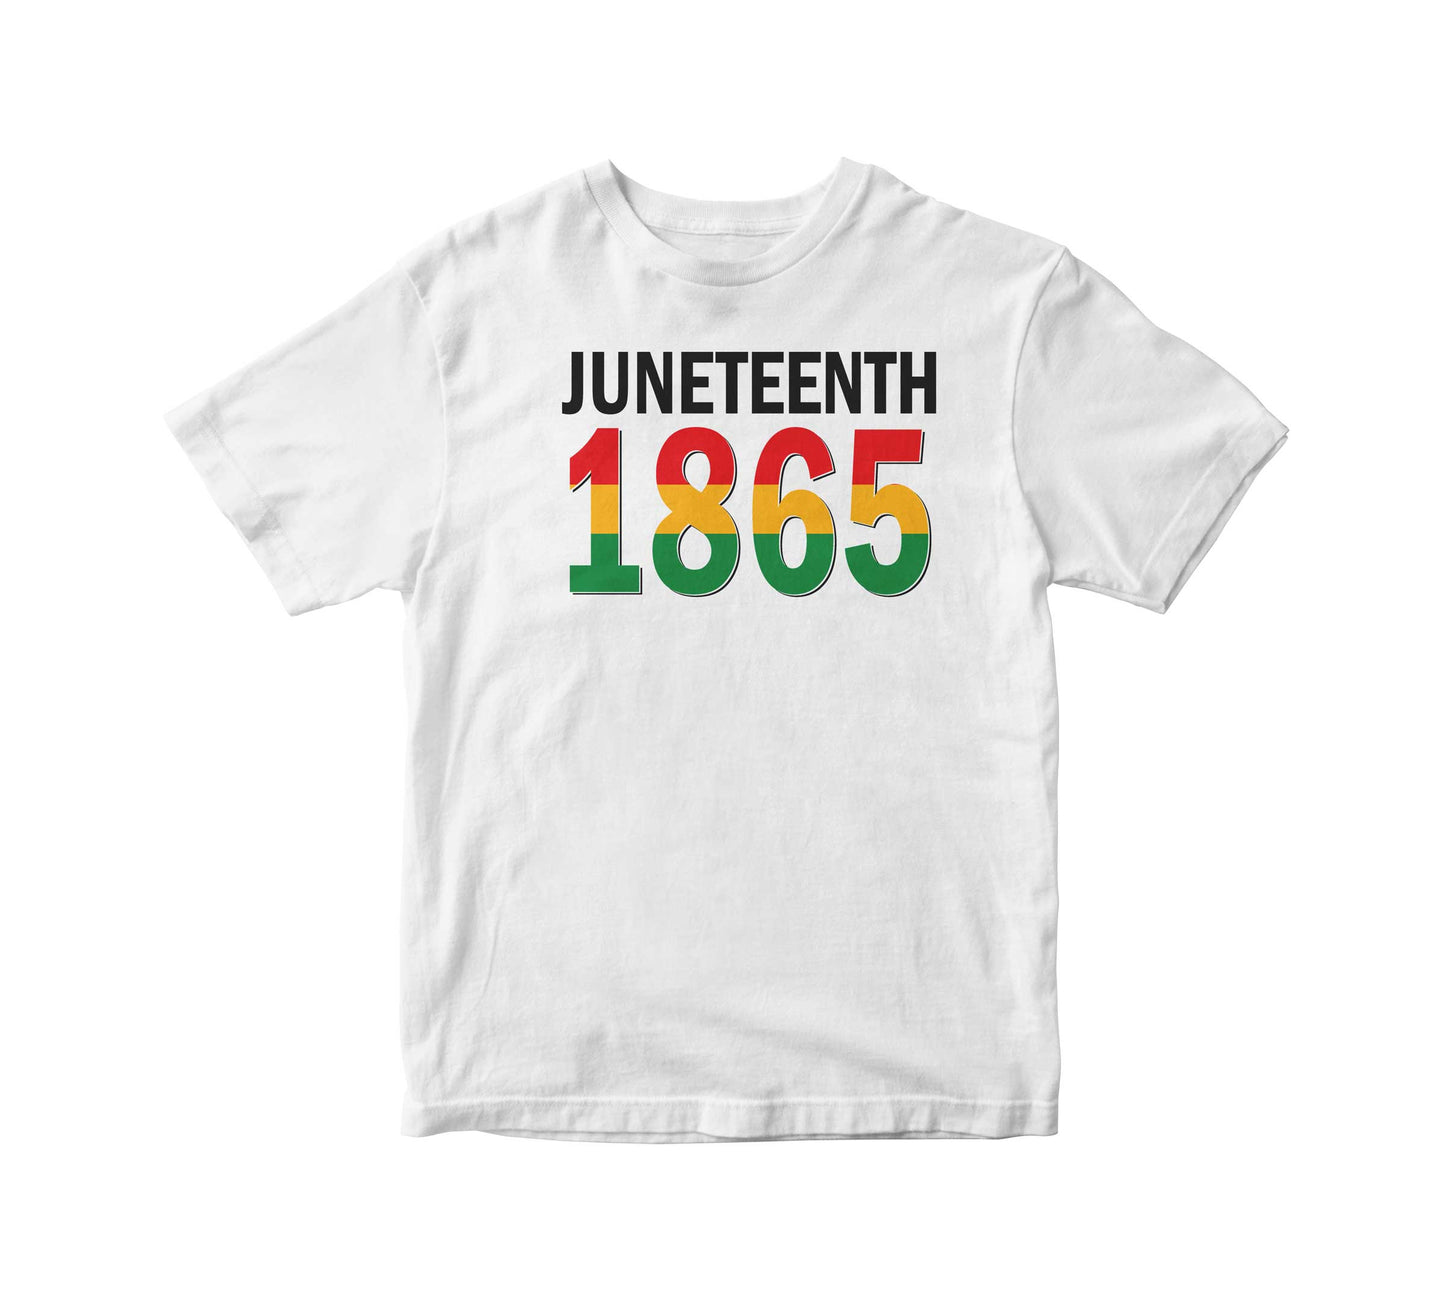 Juneteenth 1865 Kids Unisex T-Shirt